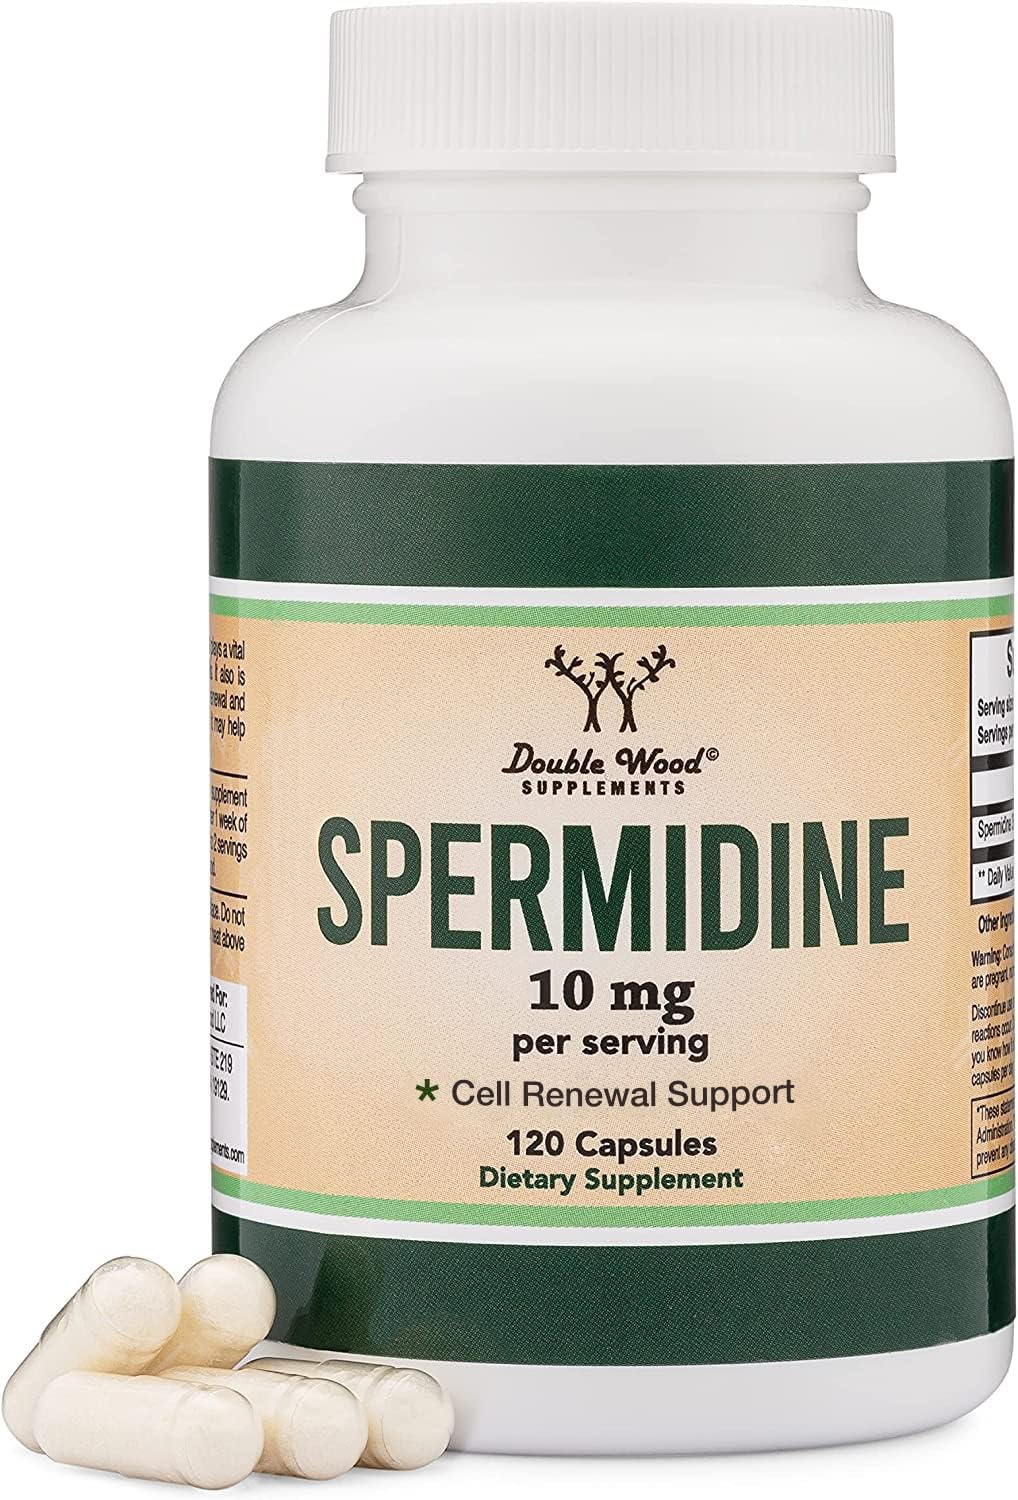 Spermidine Supplement with 120 capsules